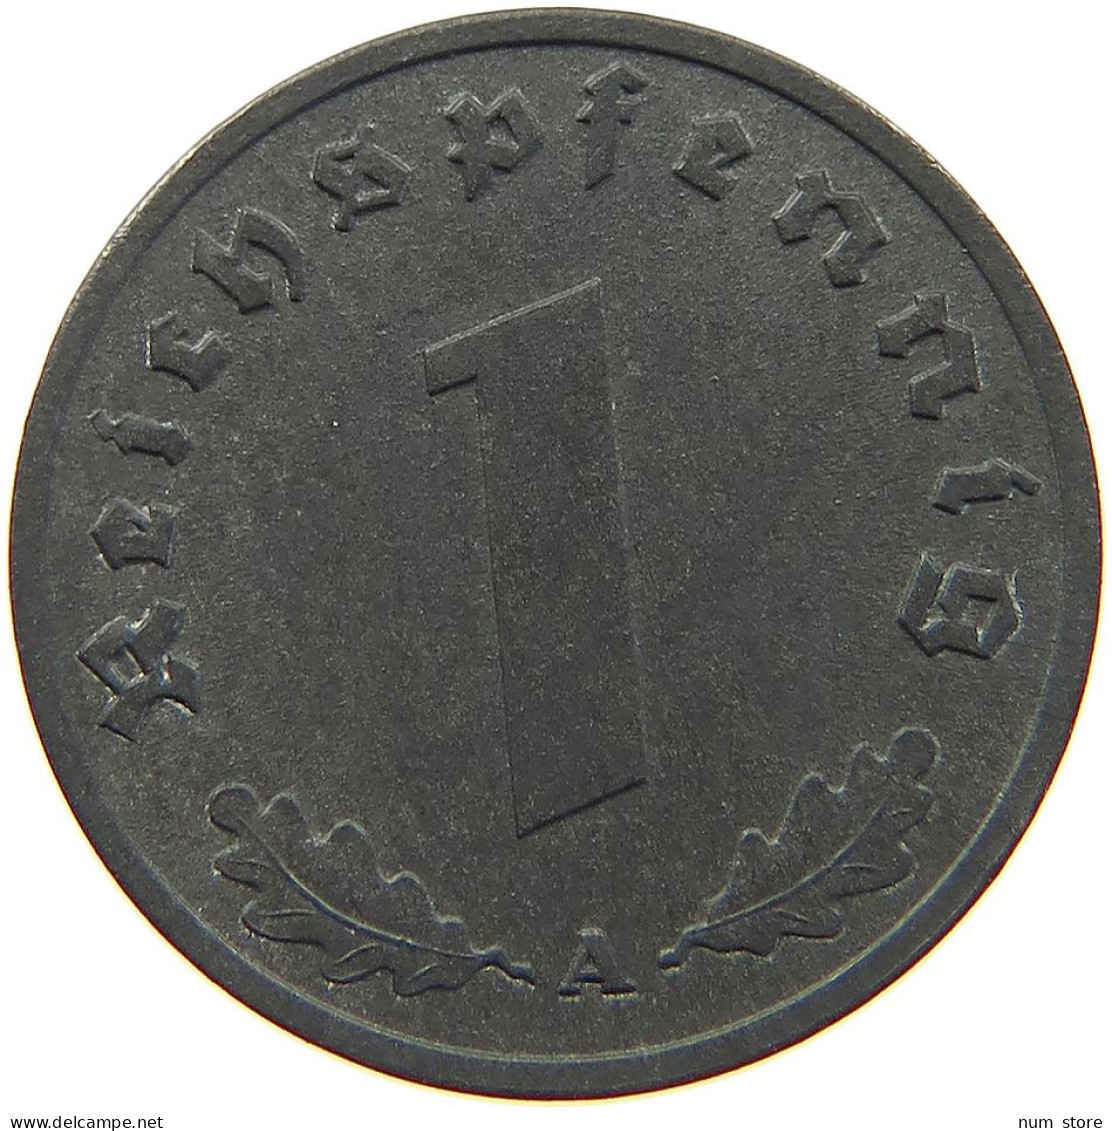 GERMANY REICHSPFENNIG 1944 A #t030 0325 - 1 Reichspfennig